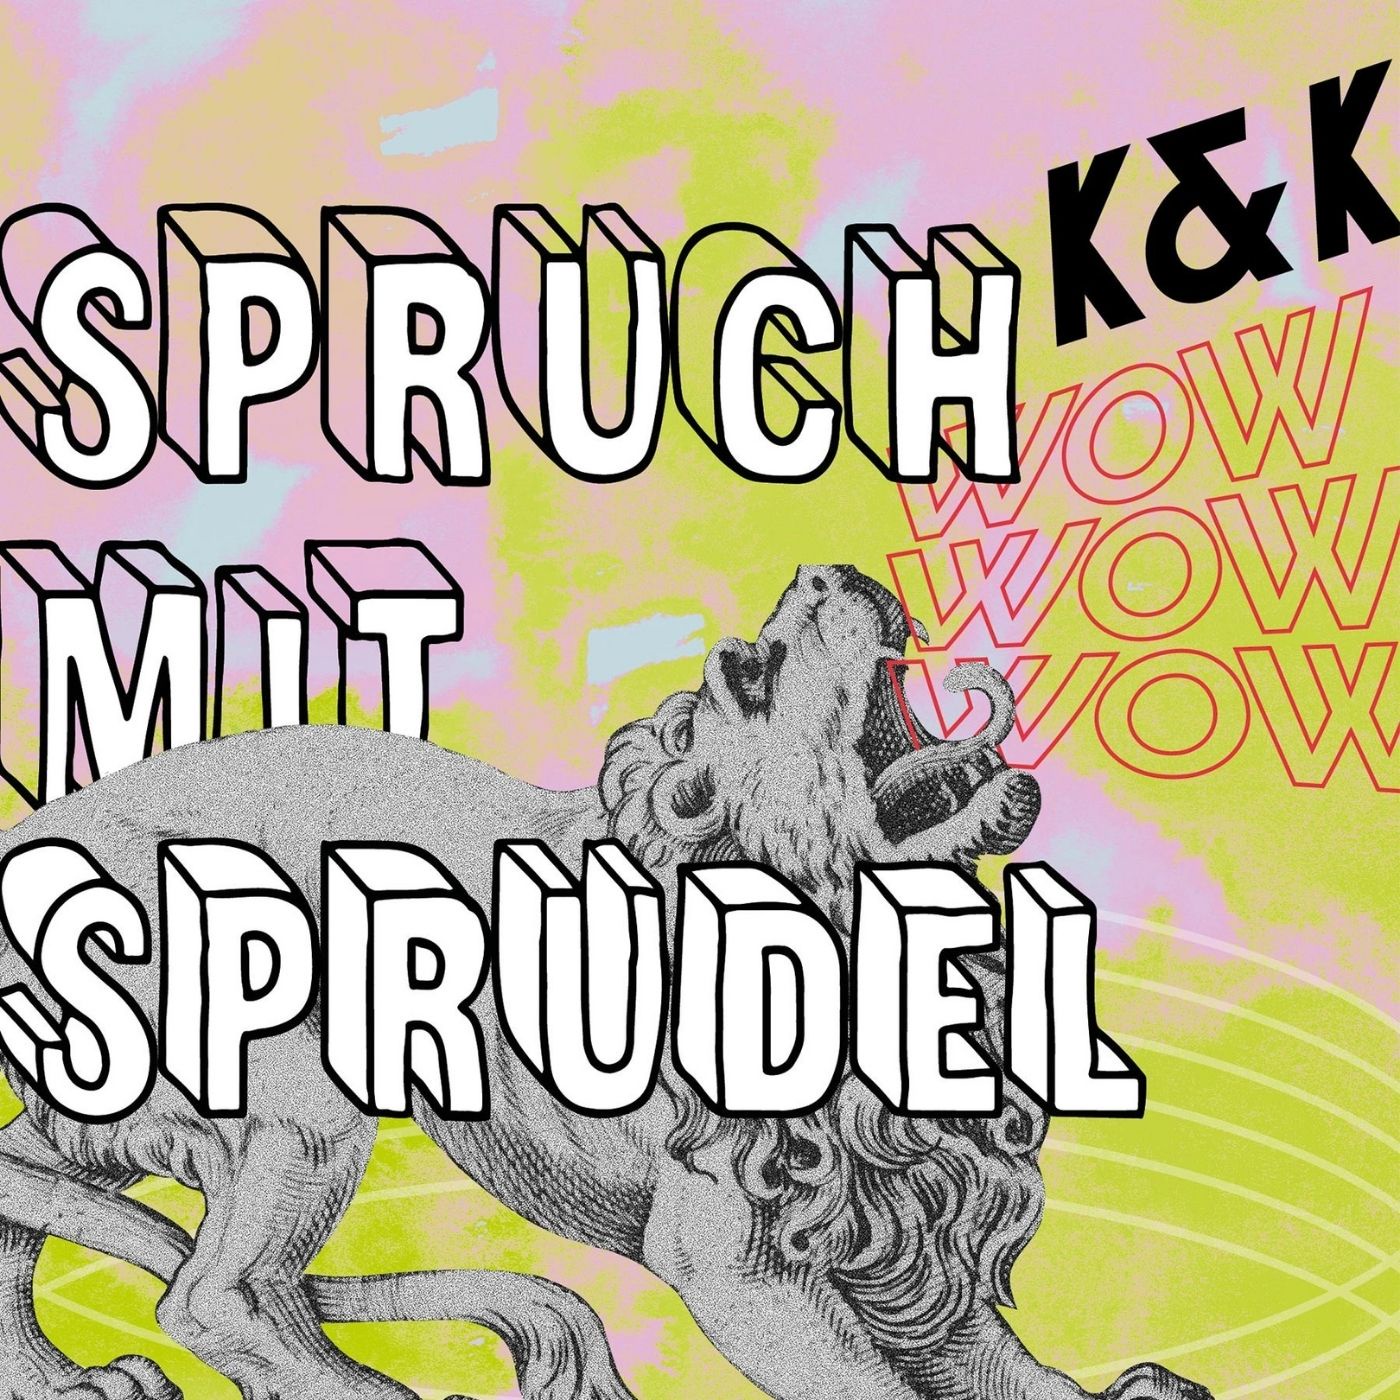 Spruch mit Sprudel – der KALK&KEGEL Podcast